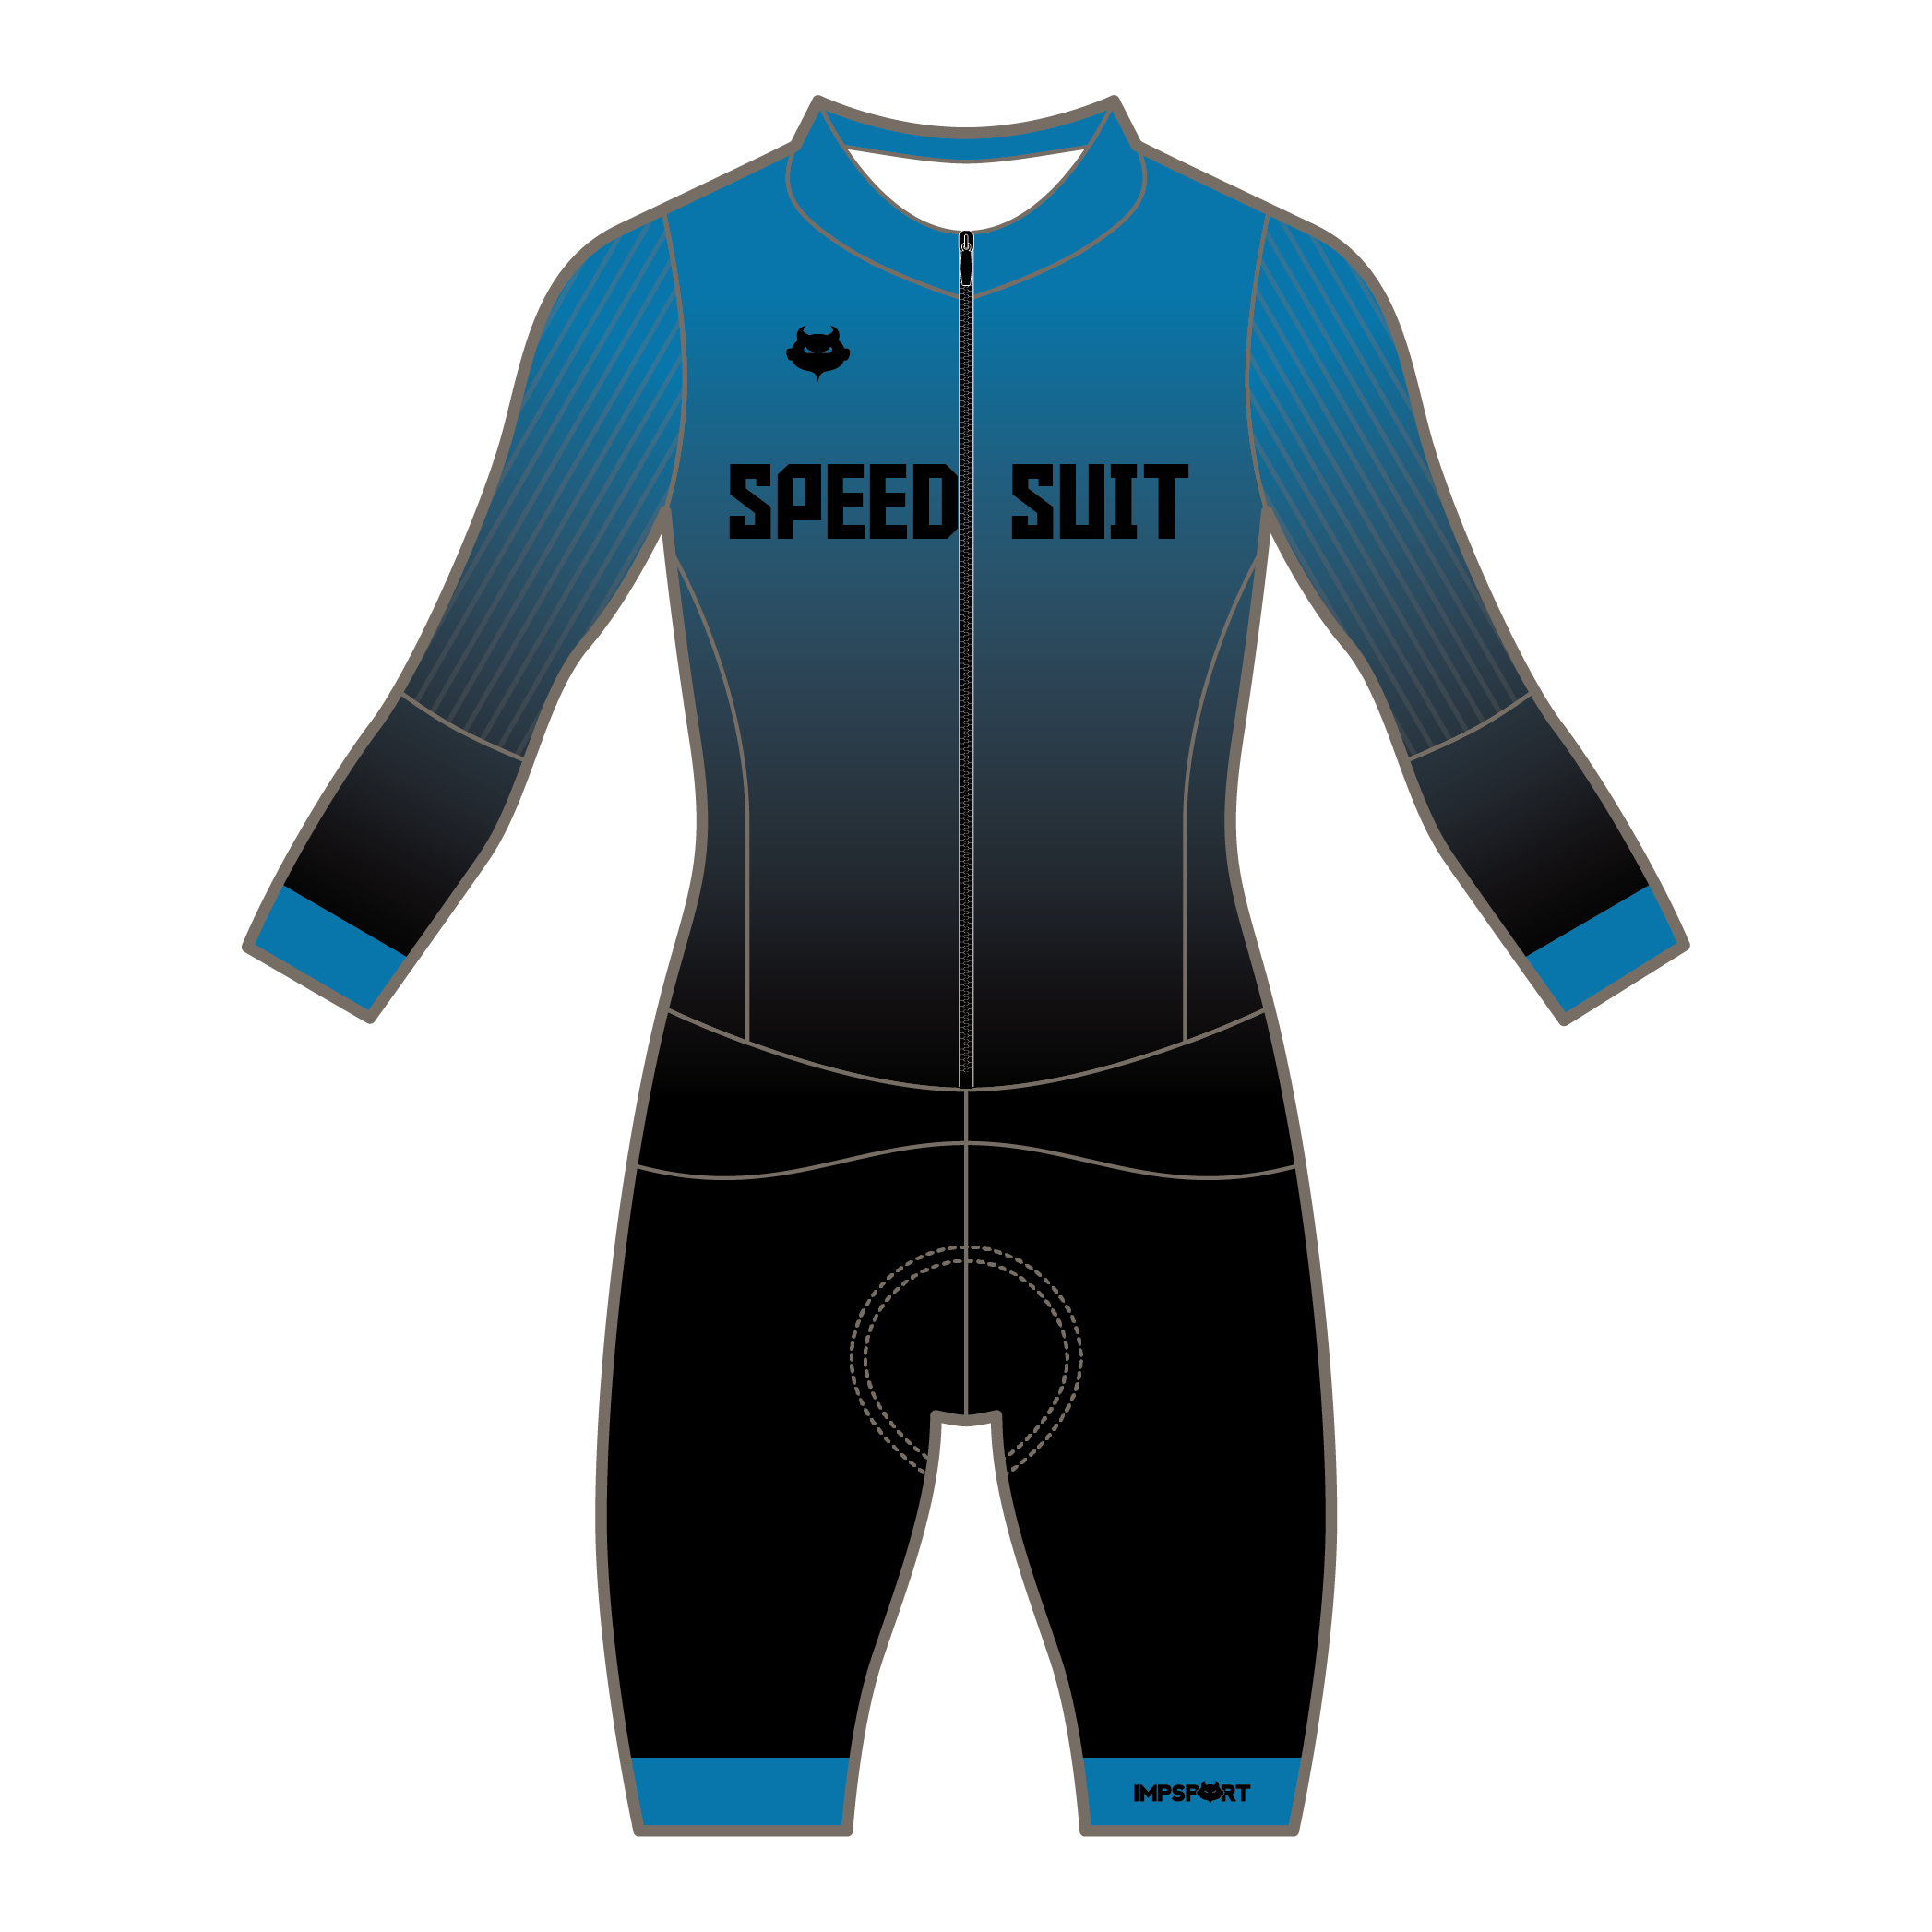 Impsport Speed Suit